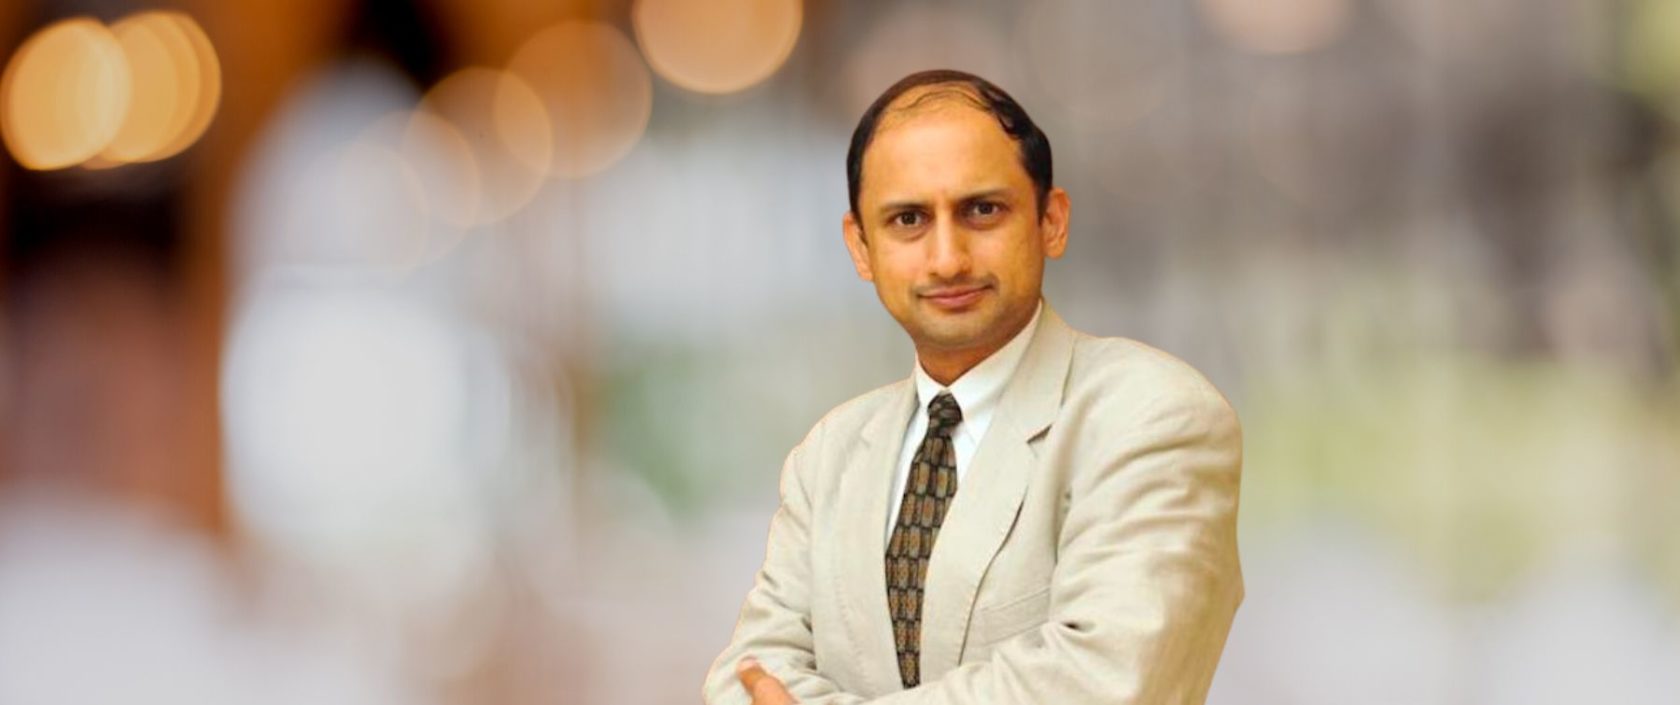 Viral V. Acharya, New York University C.V.Starr Professor of Economics,